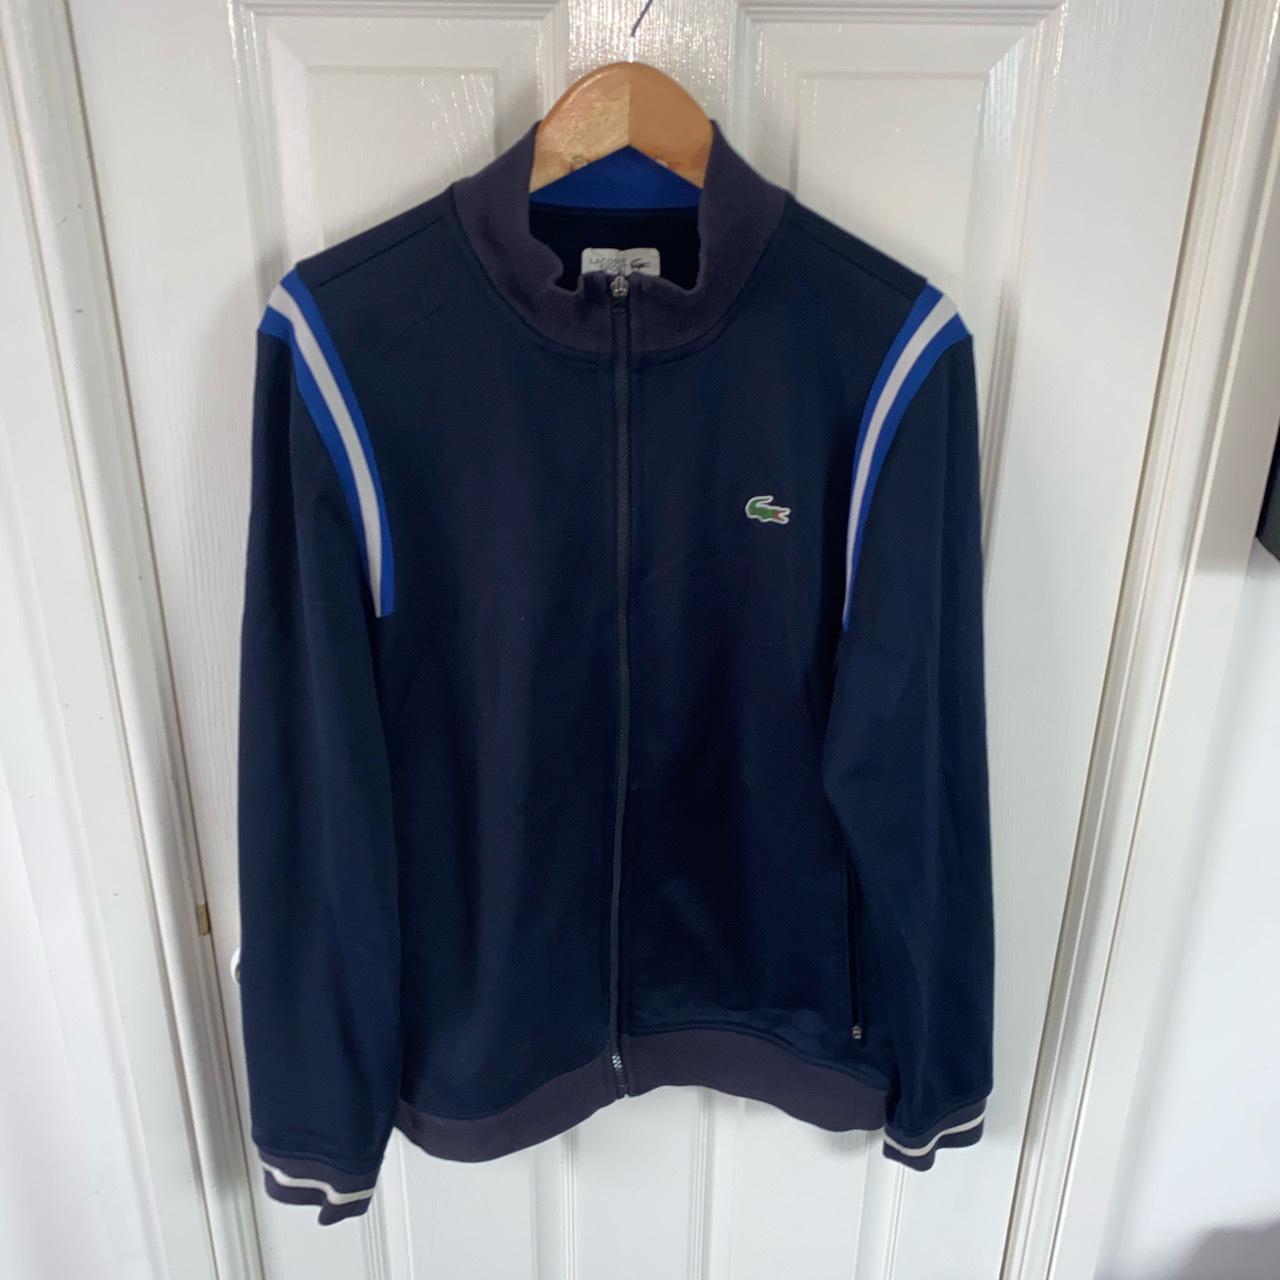 Vintage Lacoste sport track jacket Navy/ blue/... - Depop